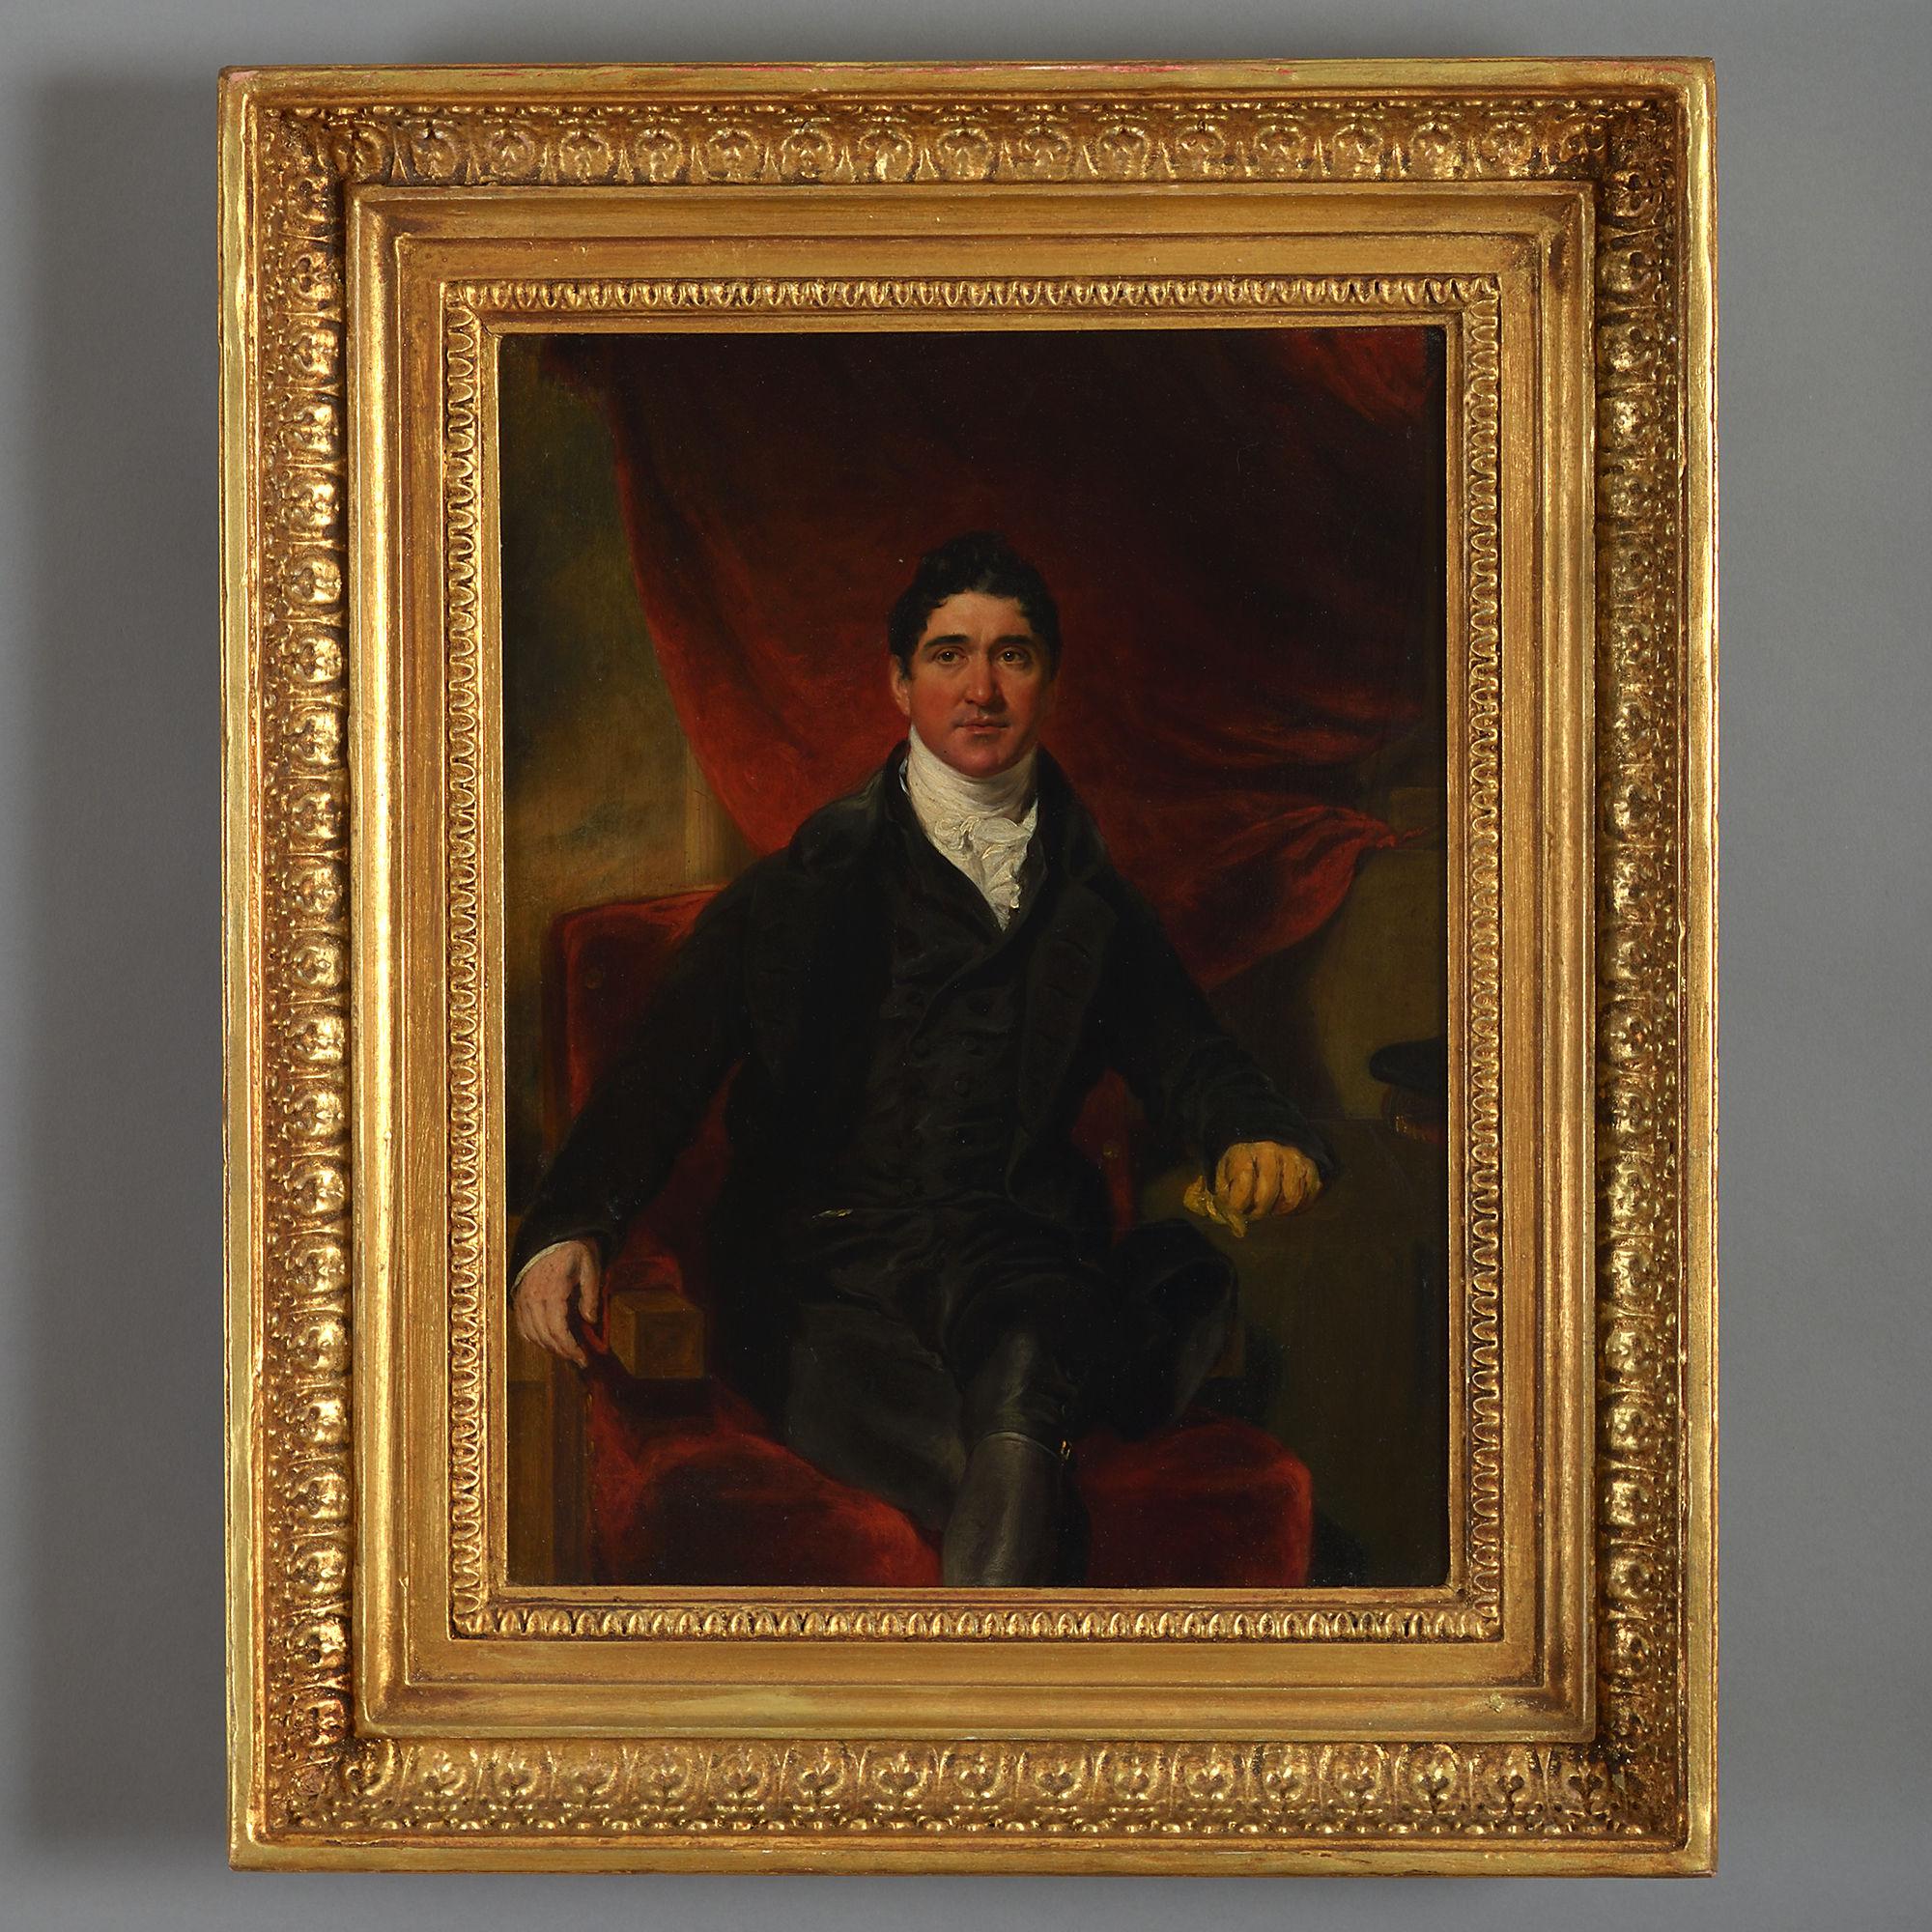 Henry Wyatt (1794-1840) Porträt von William Gell (1777-1836) 

Öl auf Tafel; in vergoldetem Rahmen gehalten 

Gell war in der Regency-Periode ein bemerkenswerter Archäologe und klassischer Gell. Er war ein Freund von Lord Byron und Walter Scott.